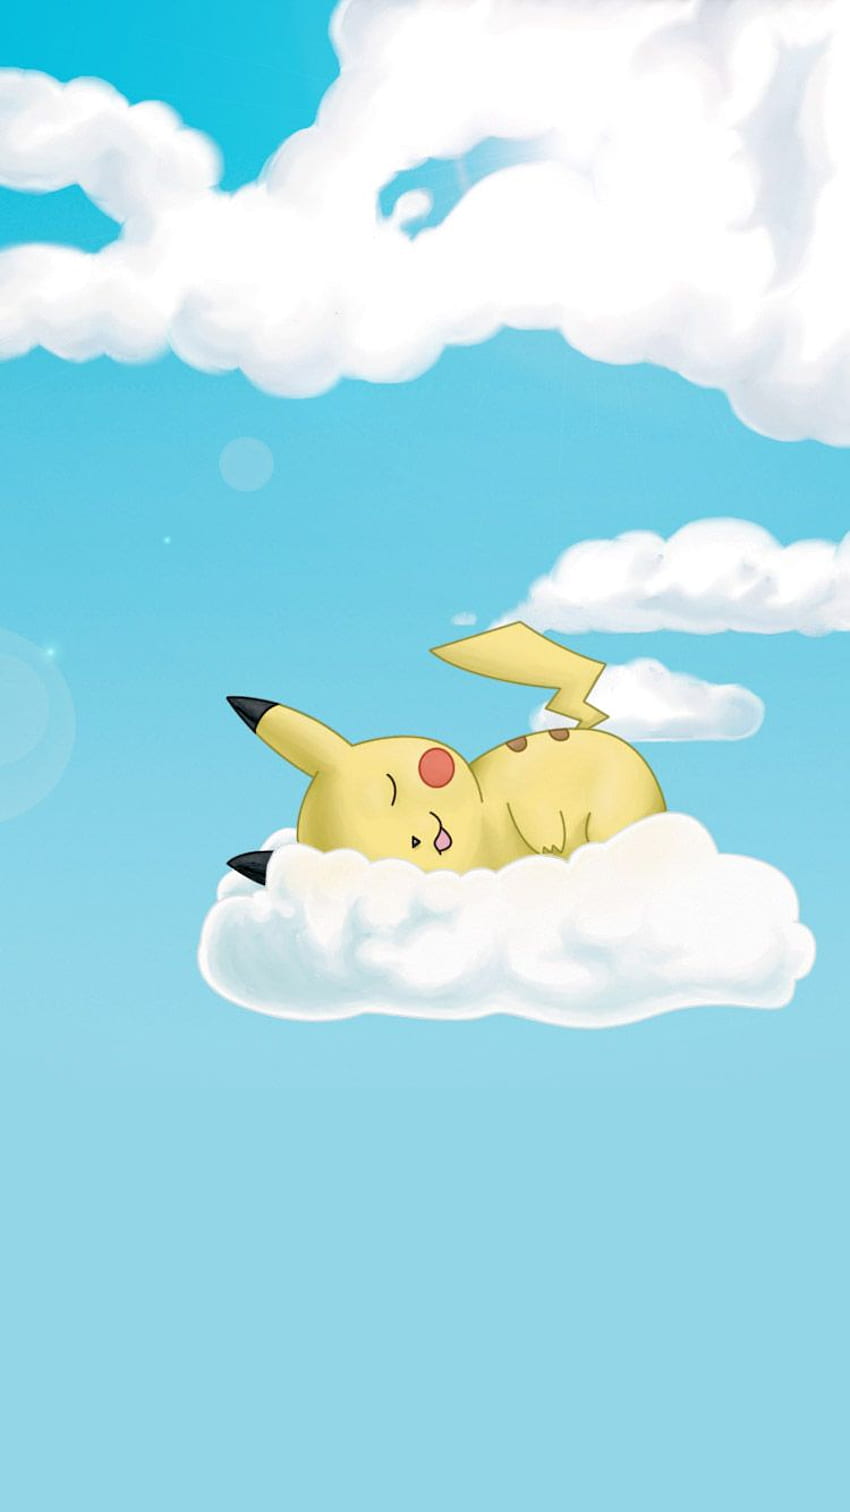 Pikachu là nhân vật được yêu thích trong bộ phim hoạt hình Pokemon, với nét vui nhộn và dễ thương. Hãy xem hình ảnh liên quan đến Pikachu để cảm nhận được sự ngộ nghĩnh và đáng yêu của chú thú nhỏ này.